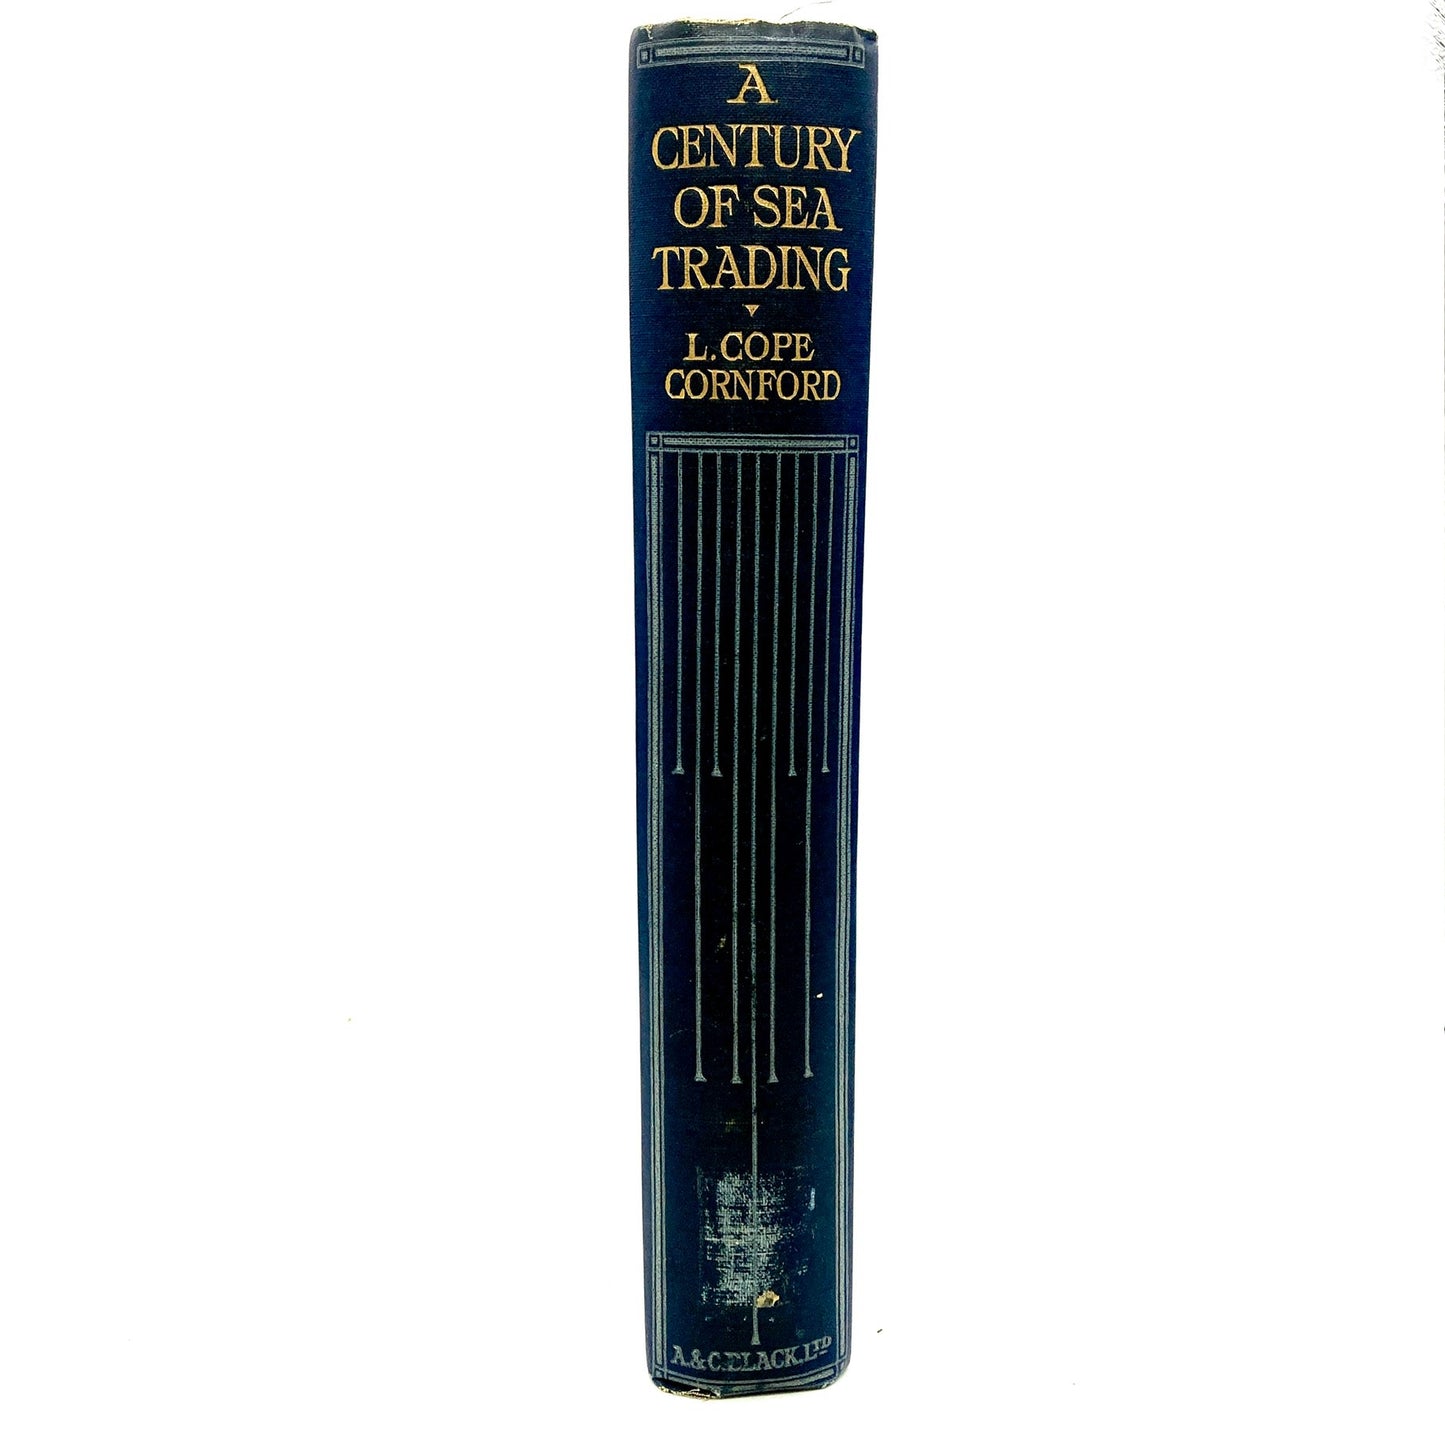 CORNFORD, L. Cope "A Century of Sea Trading" [A&C Black, 1924]